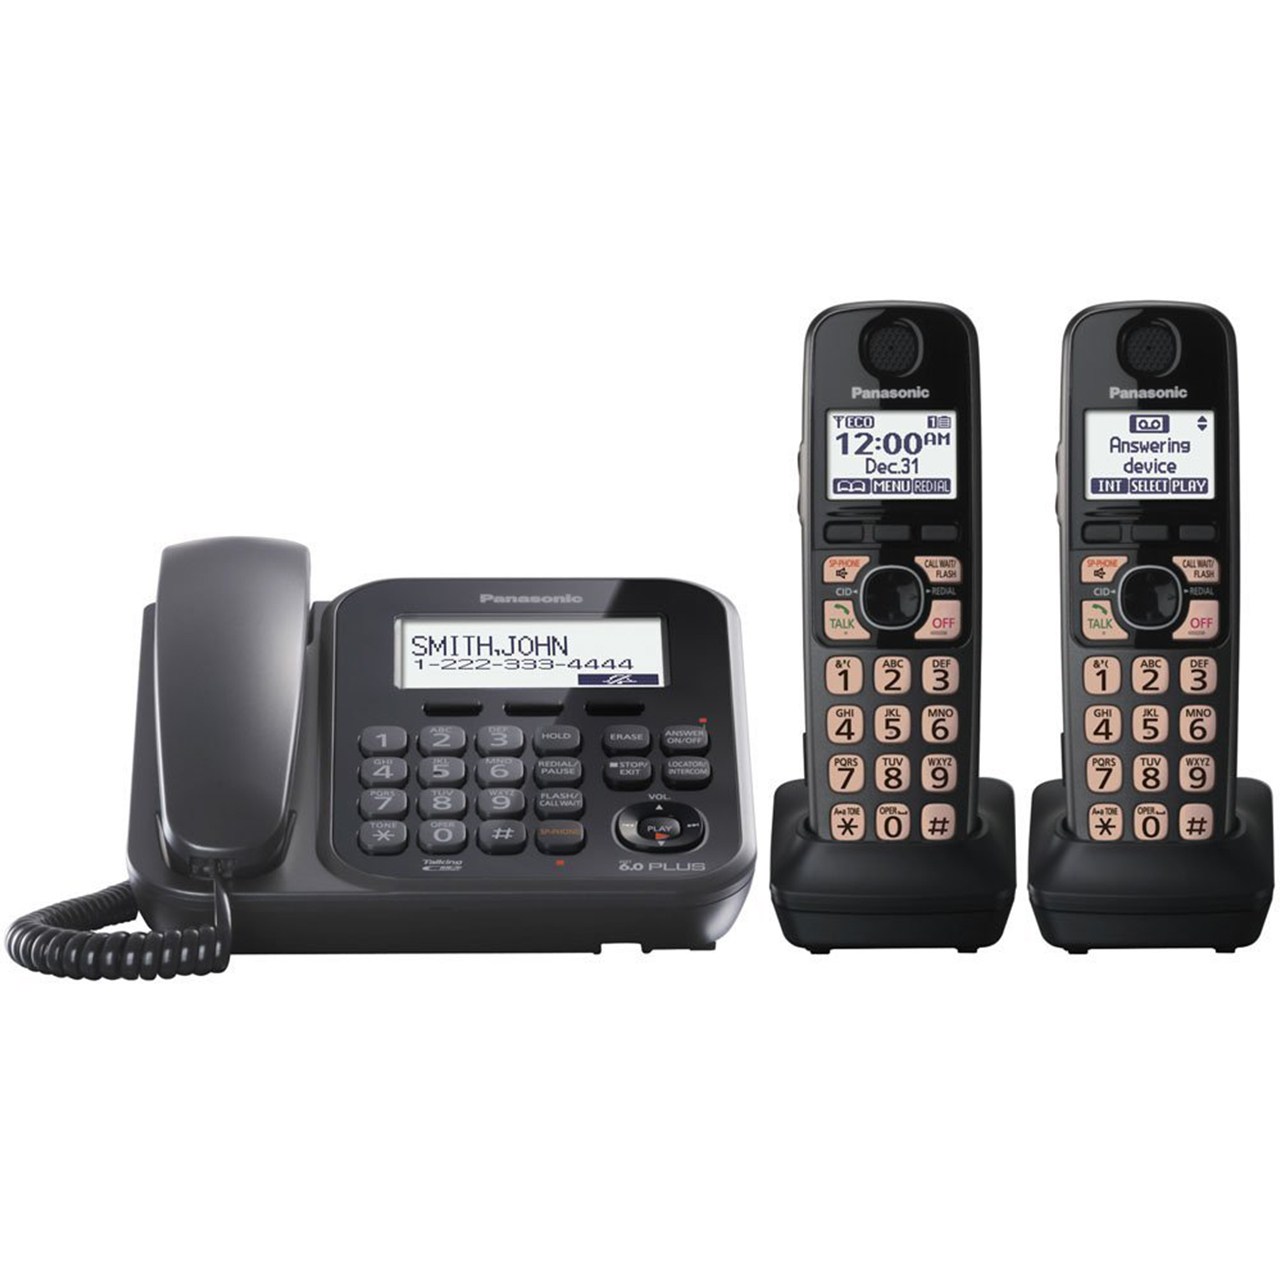 تلفن بی سیم پاناسونیک مدل KX-TG4772